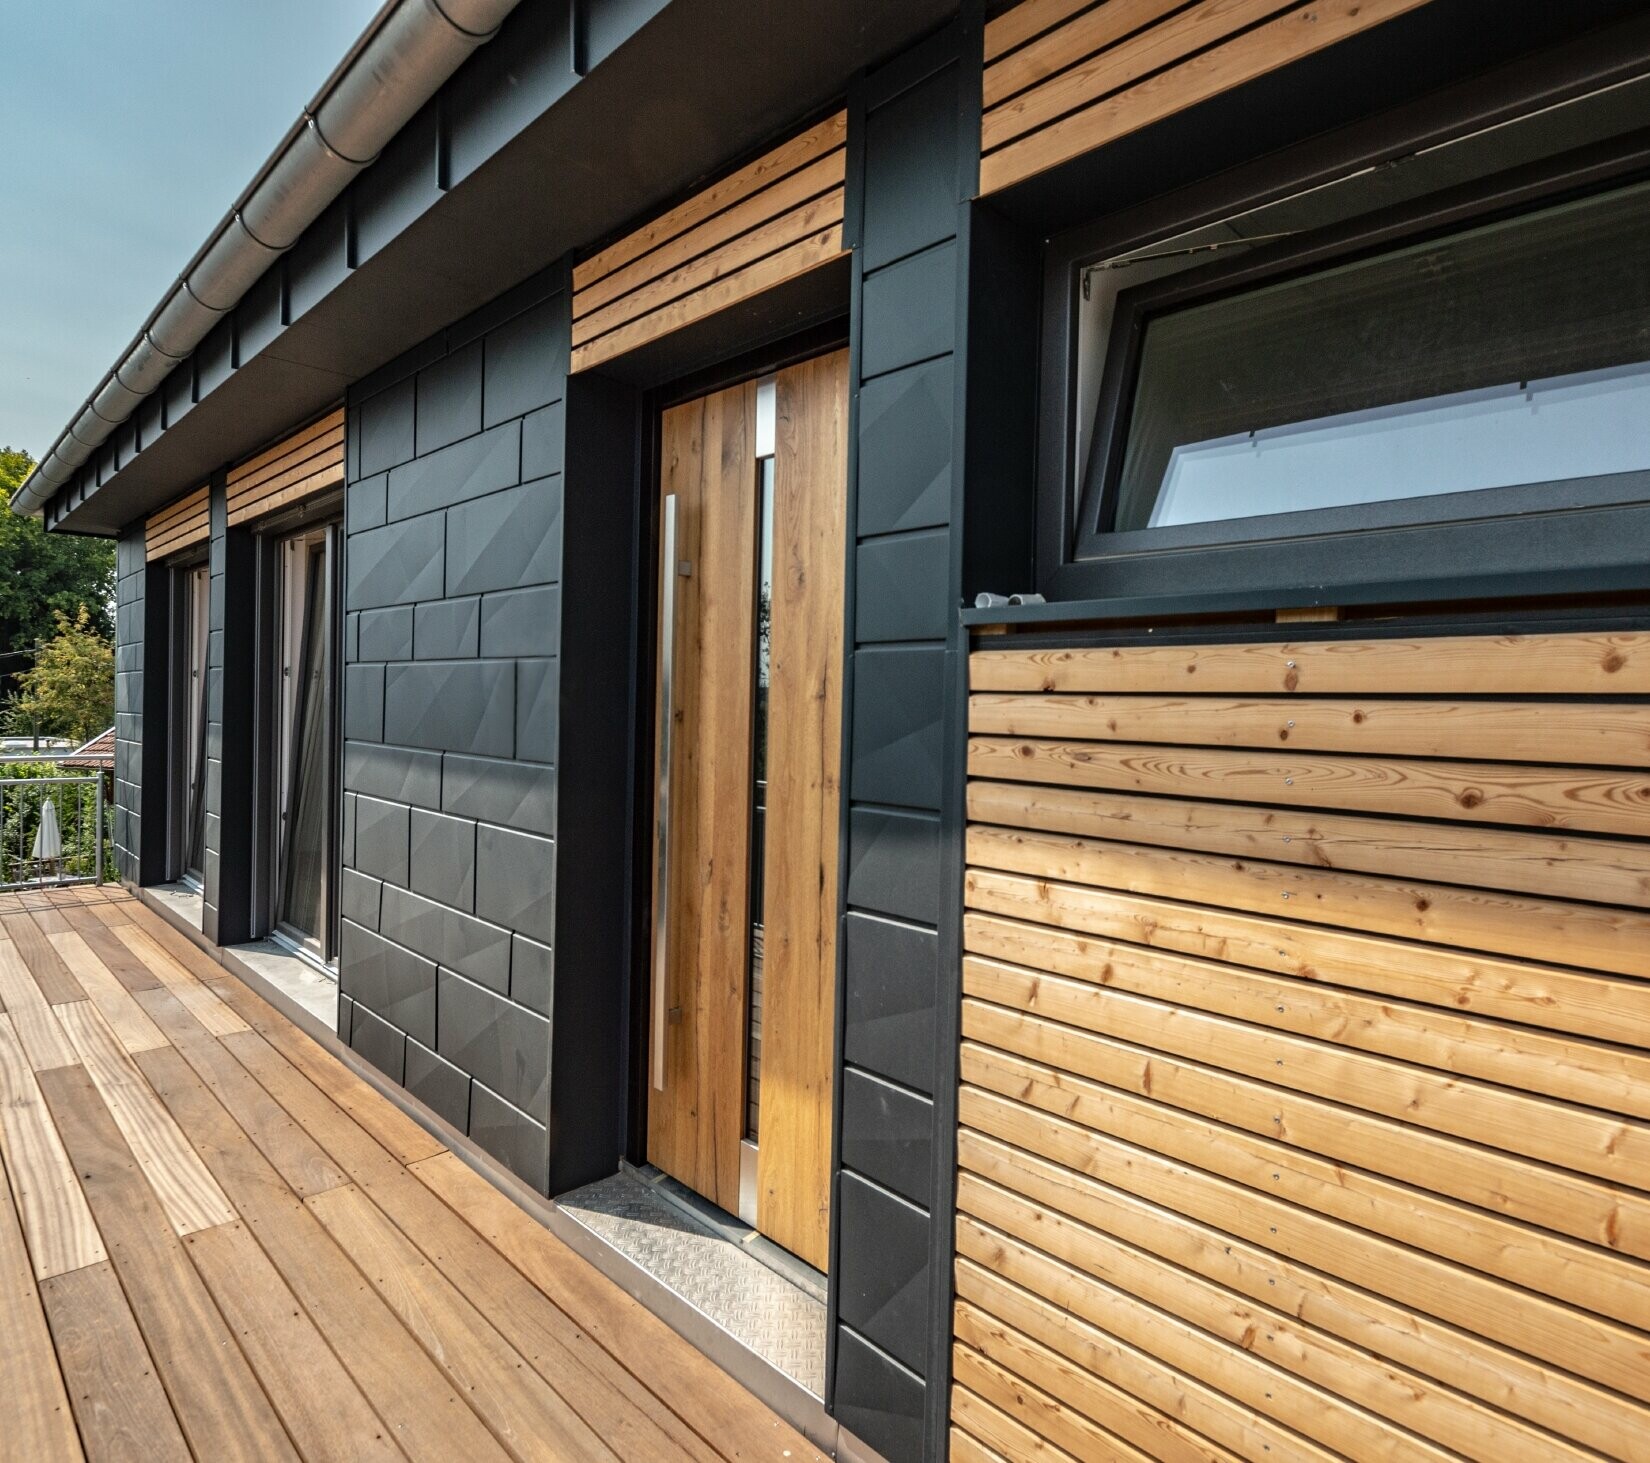 Conception de façade par mélange des matériaux que sont l’aluminium avec le Siding.X PREFA couleur anthracite, et les tasseaux en bois horizontaux.